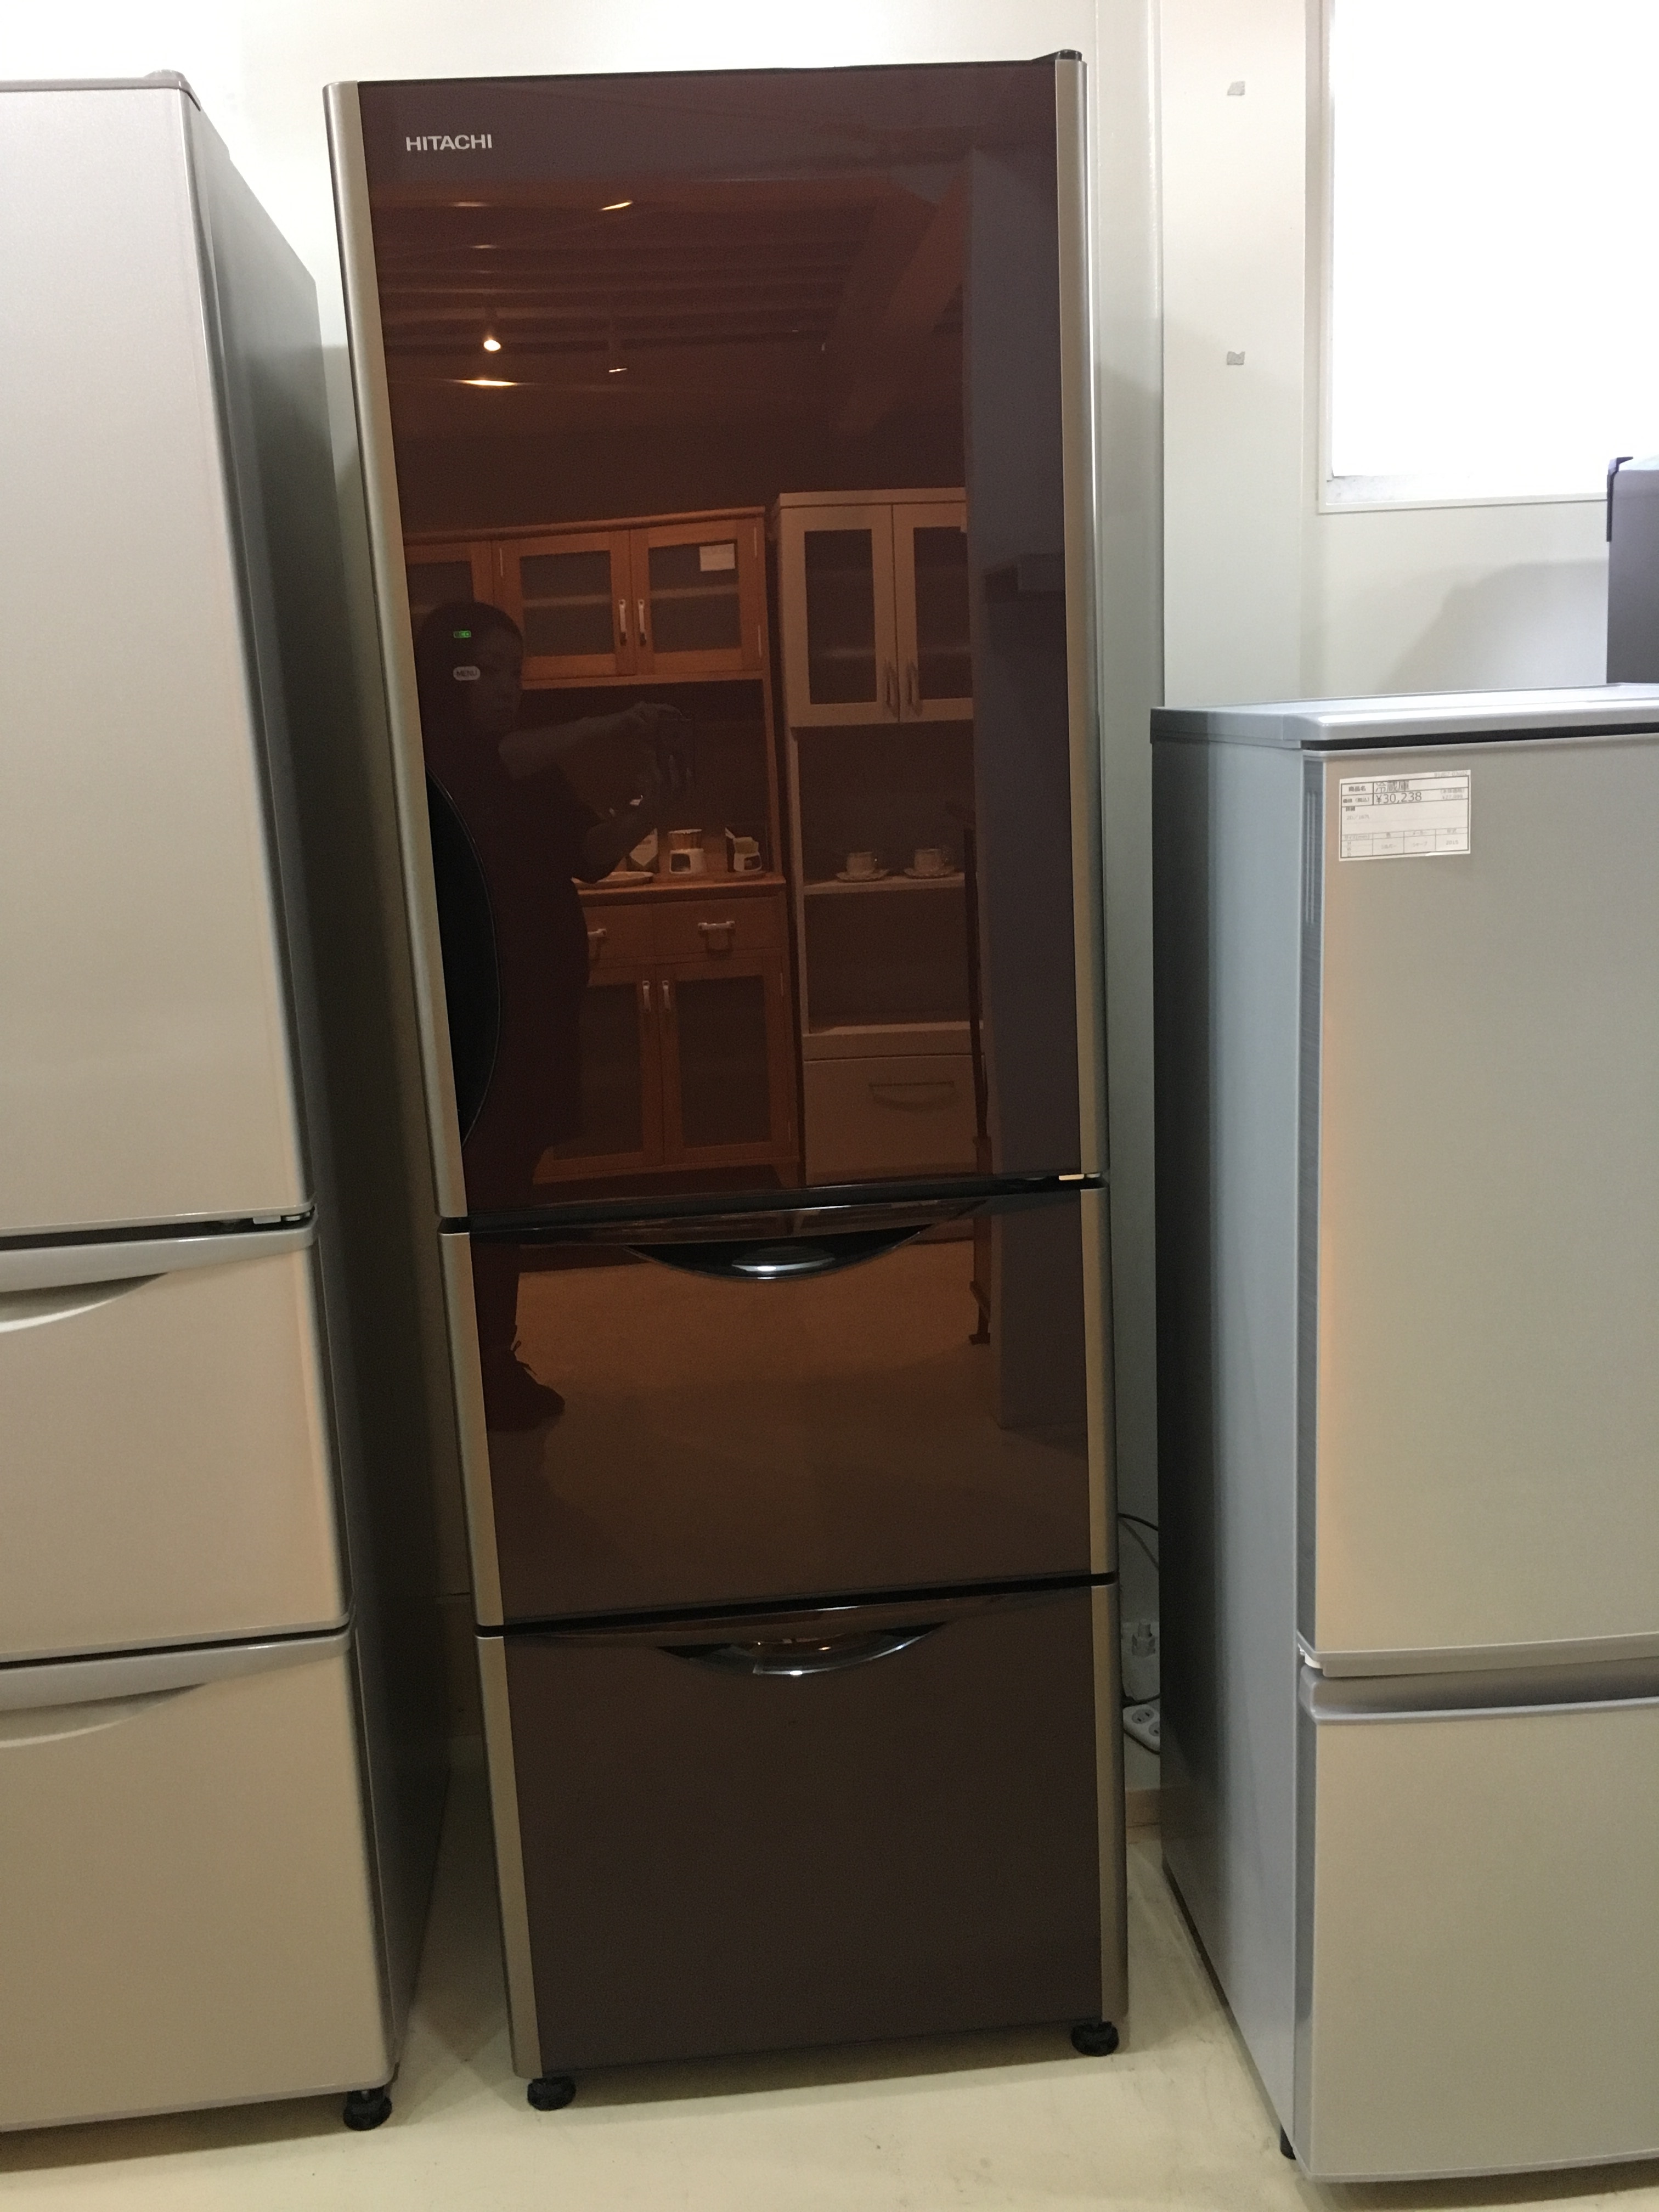 国内配送料無料 日立 地域限定送料無料 冷凍冷蔵庫 R-S3800HV クリスタルドア 冷蔵庫